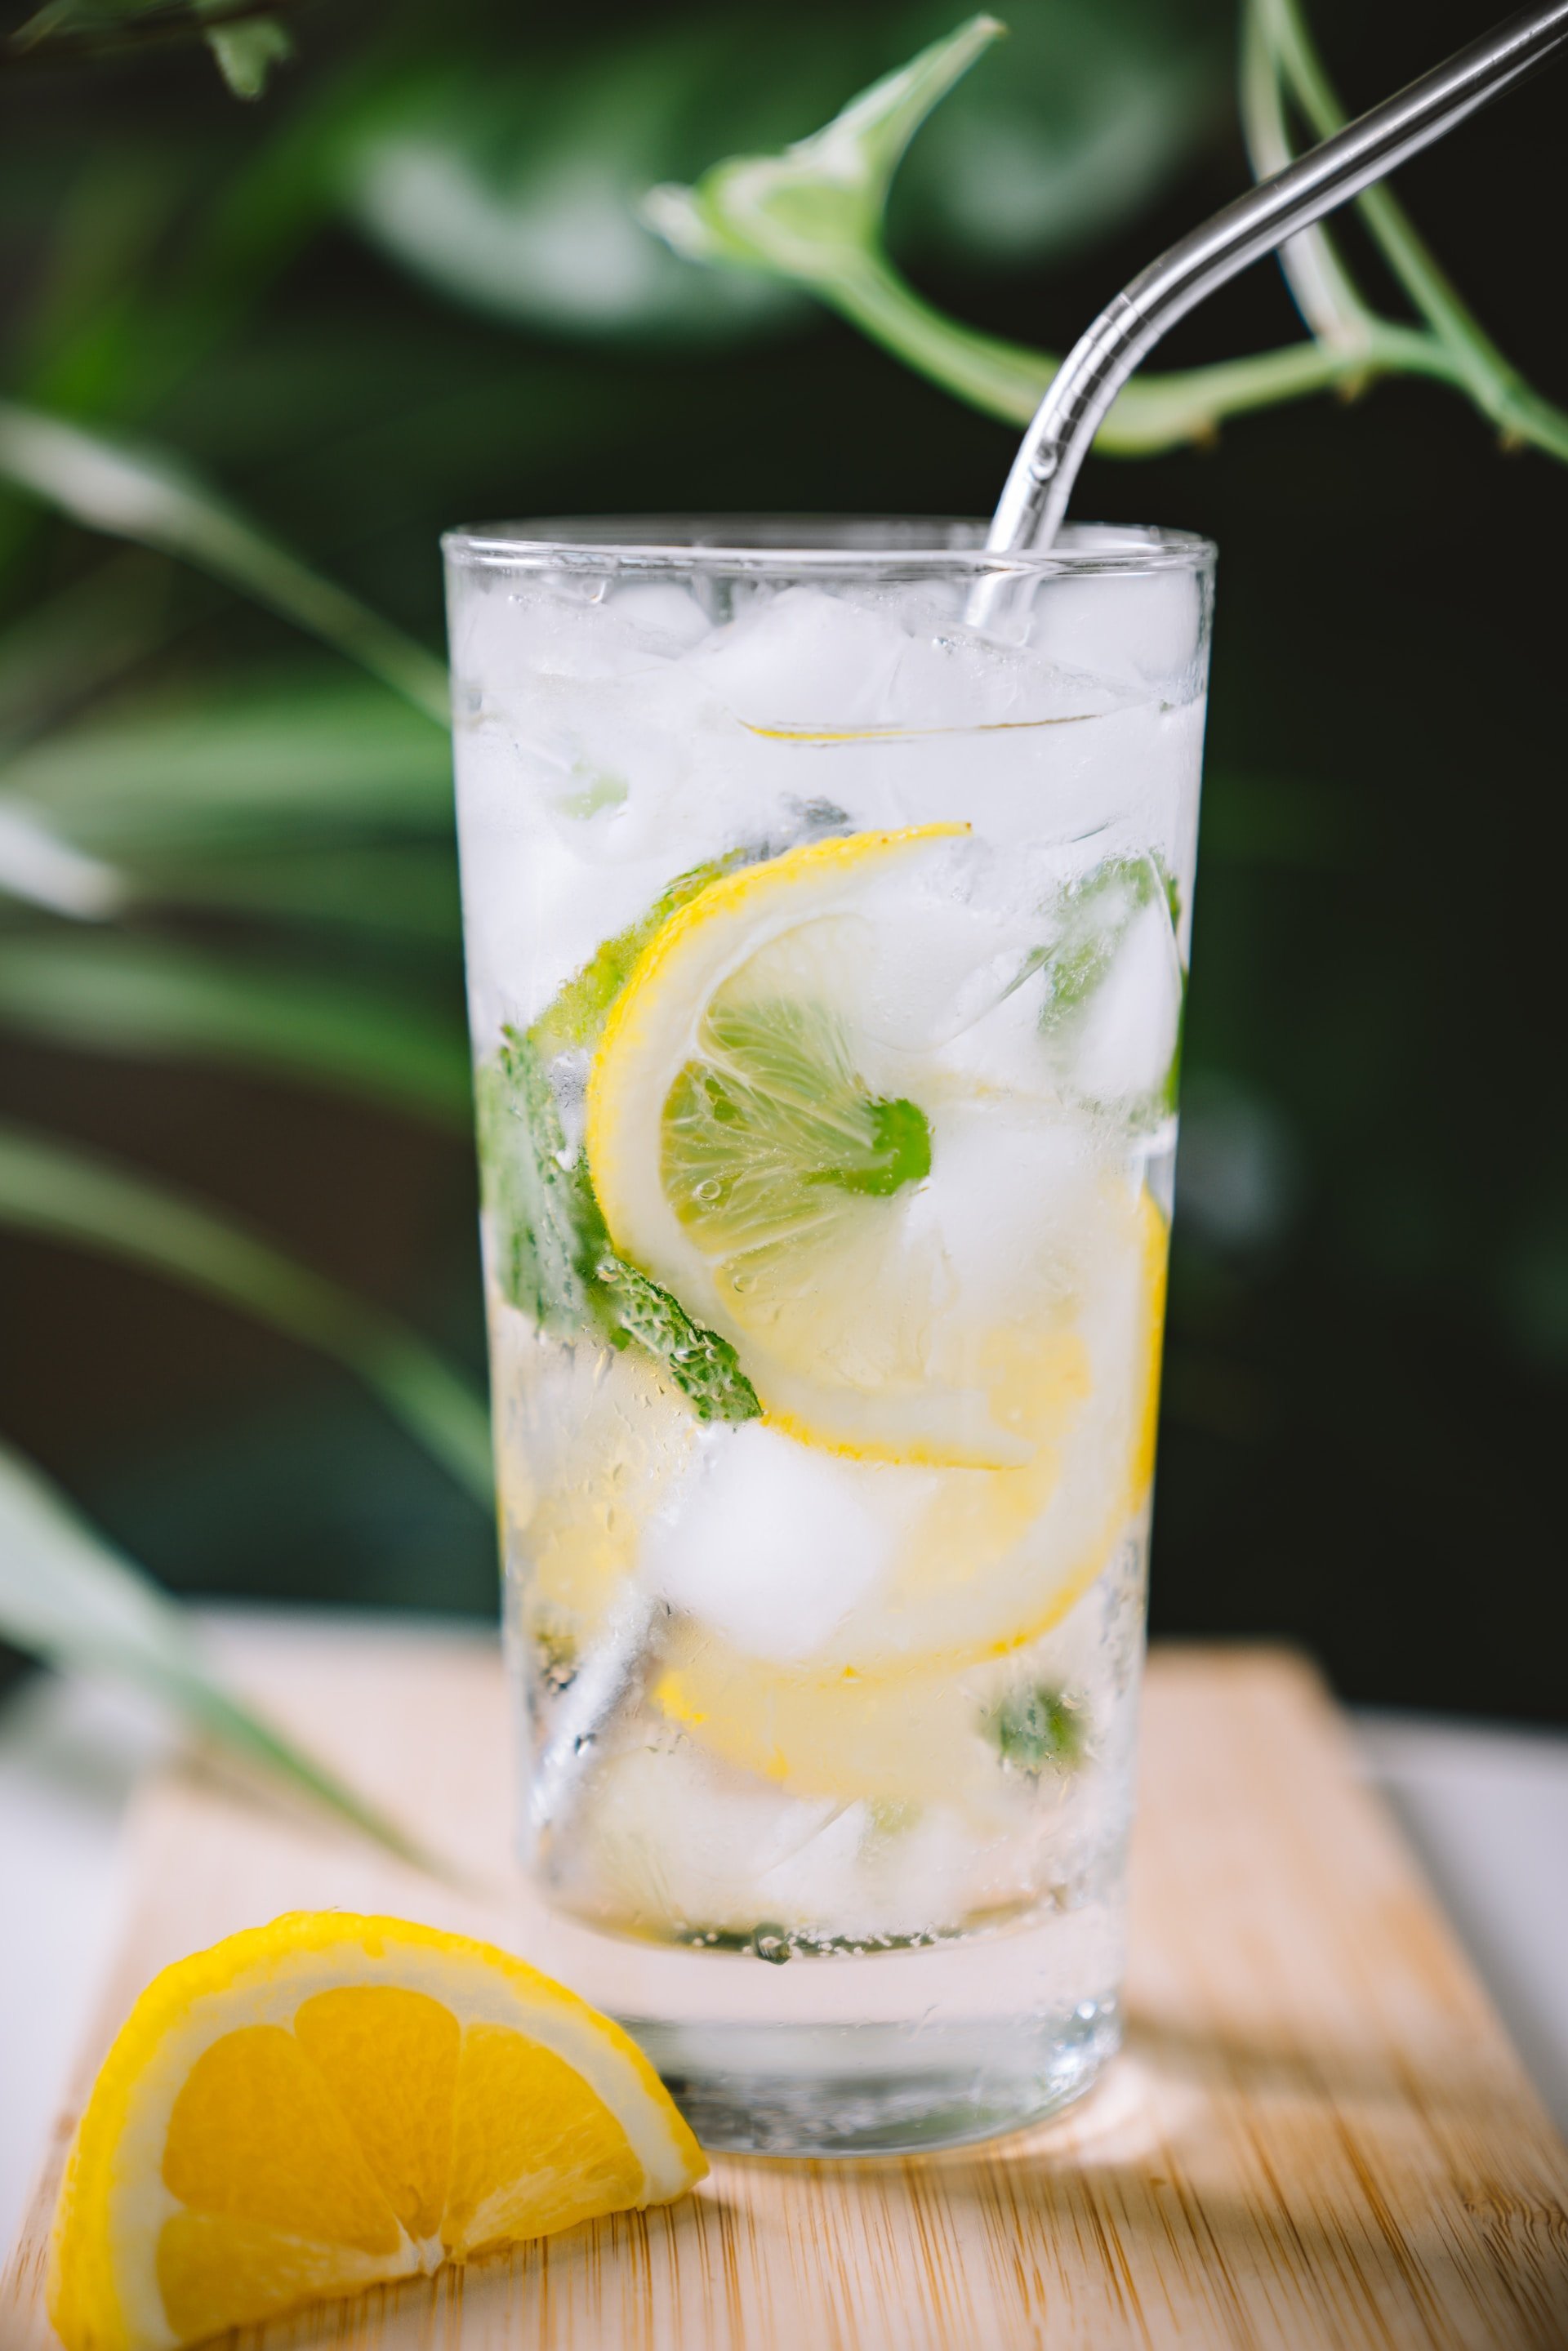 ¡Exprime el sabor del verano! Descubre 4 recetas de limonada casera con frutas de temporada